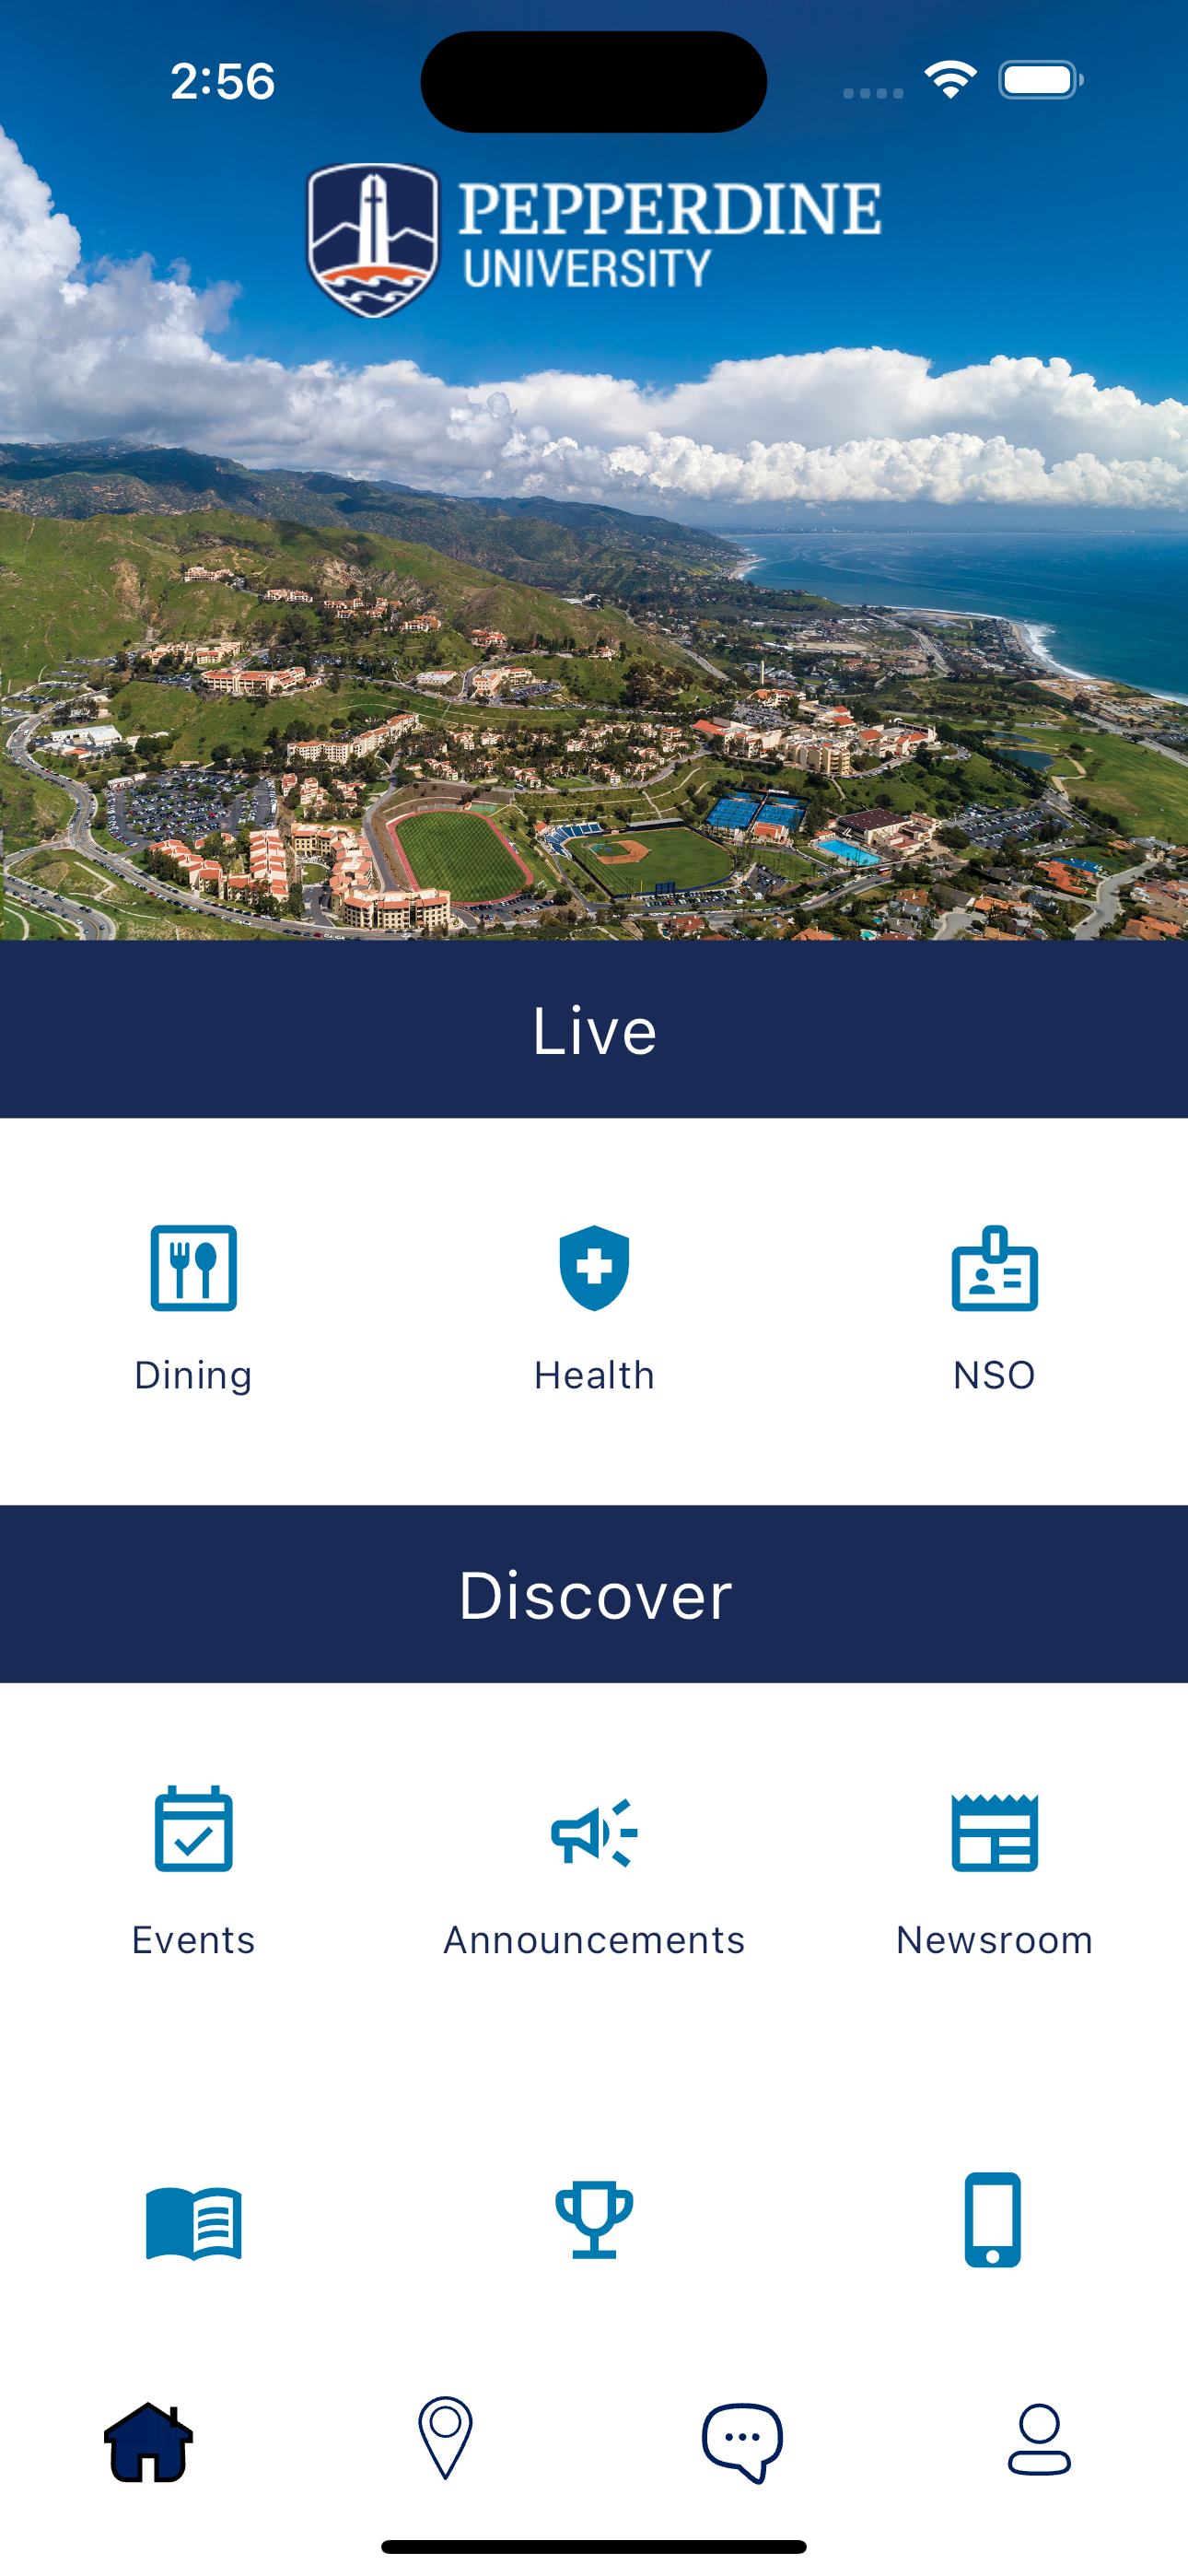 Pepperdine University Mobile App Home Screen w/ New Branding